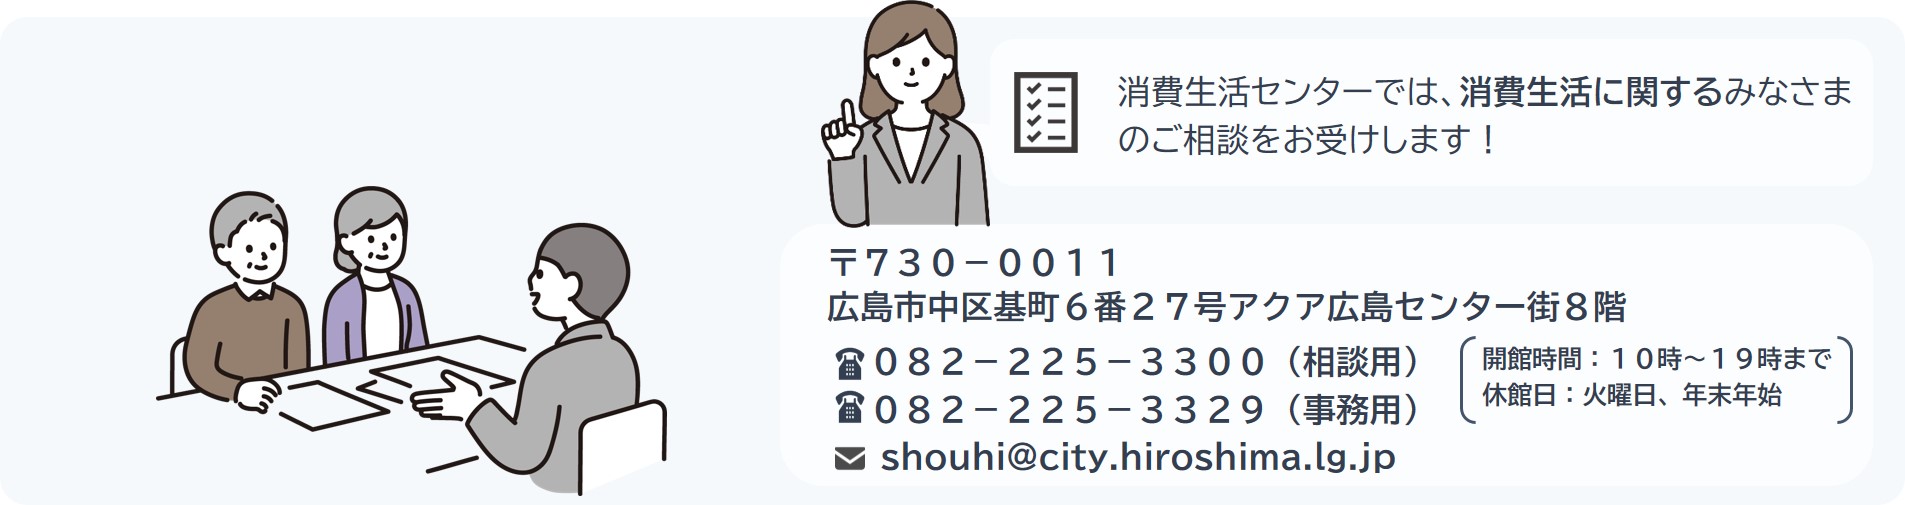 広島市消費生活センターのタイトル画像